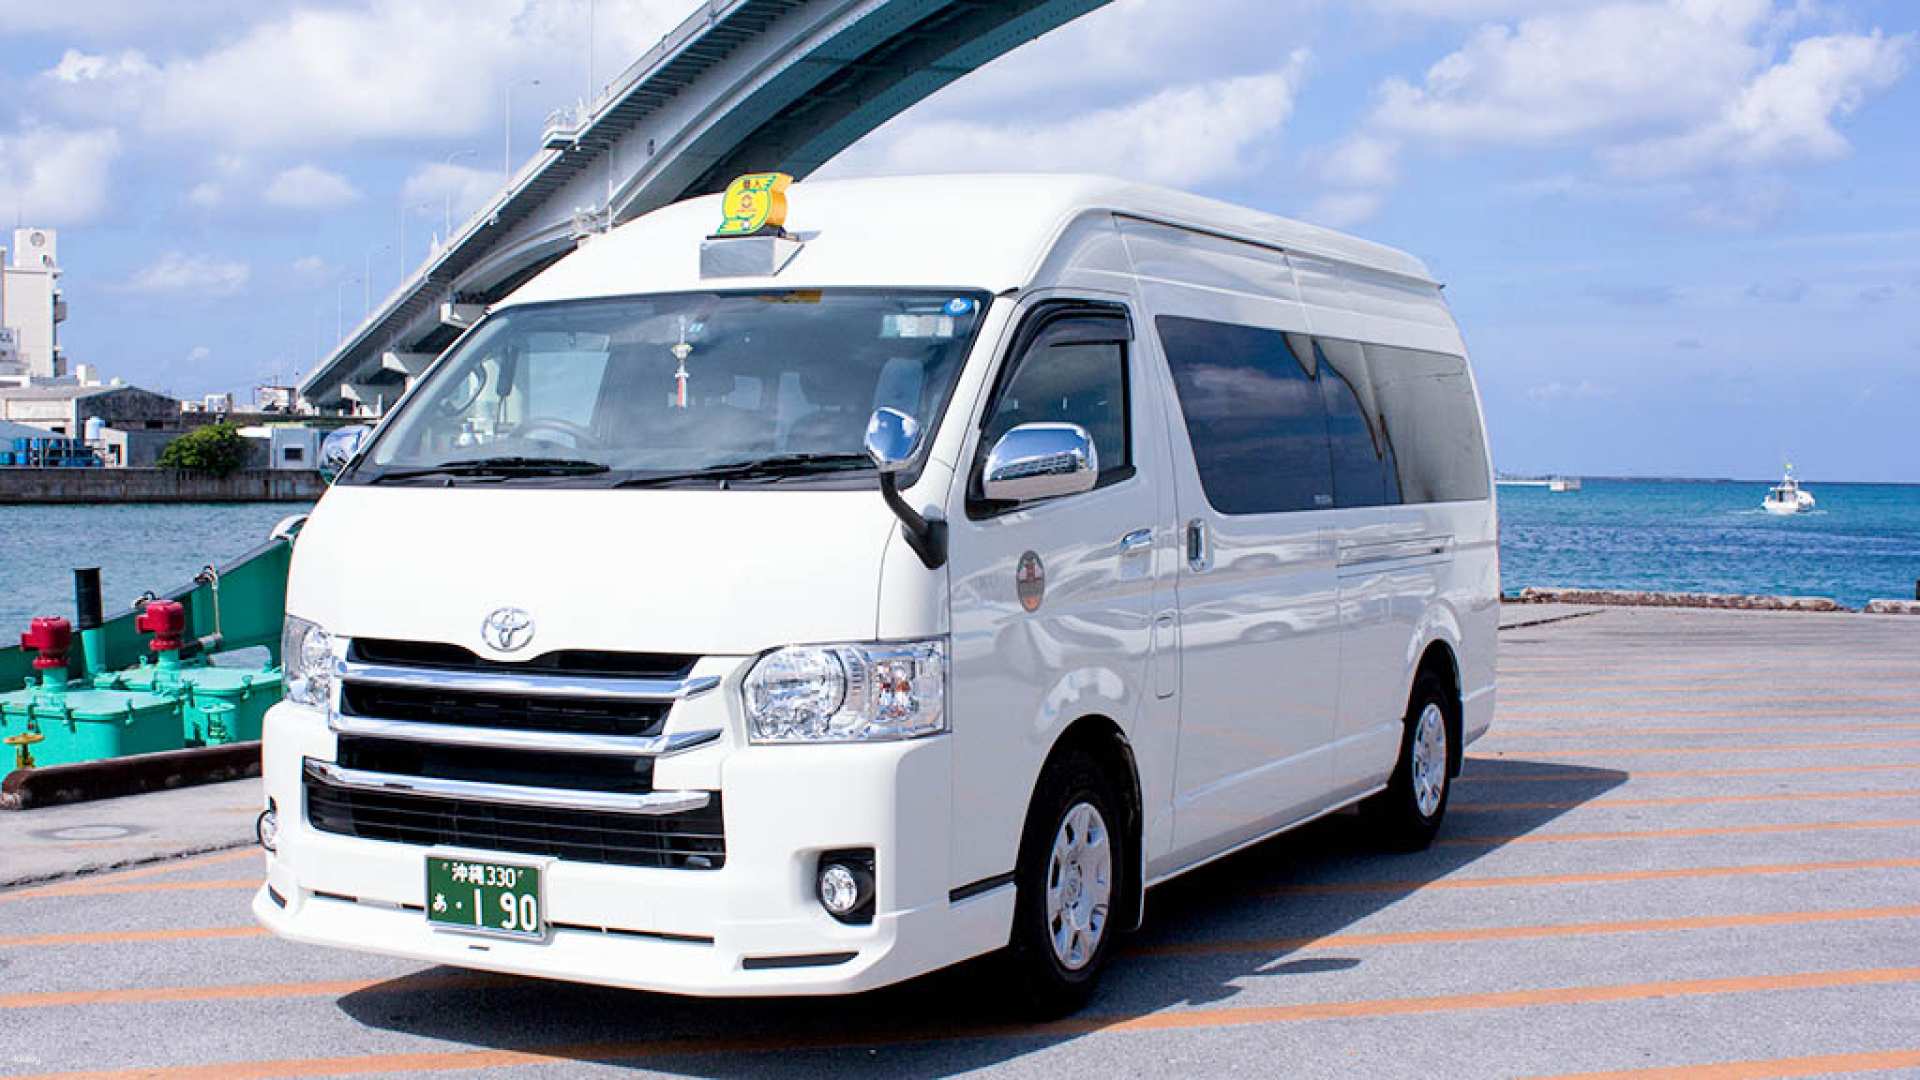 日本-沖繩包車旅遊| 精選5條沖繩熱門景點路線| 飯店&機場&郵輪港口接送